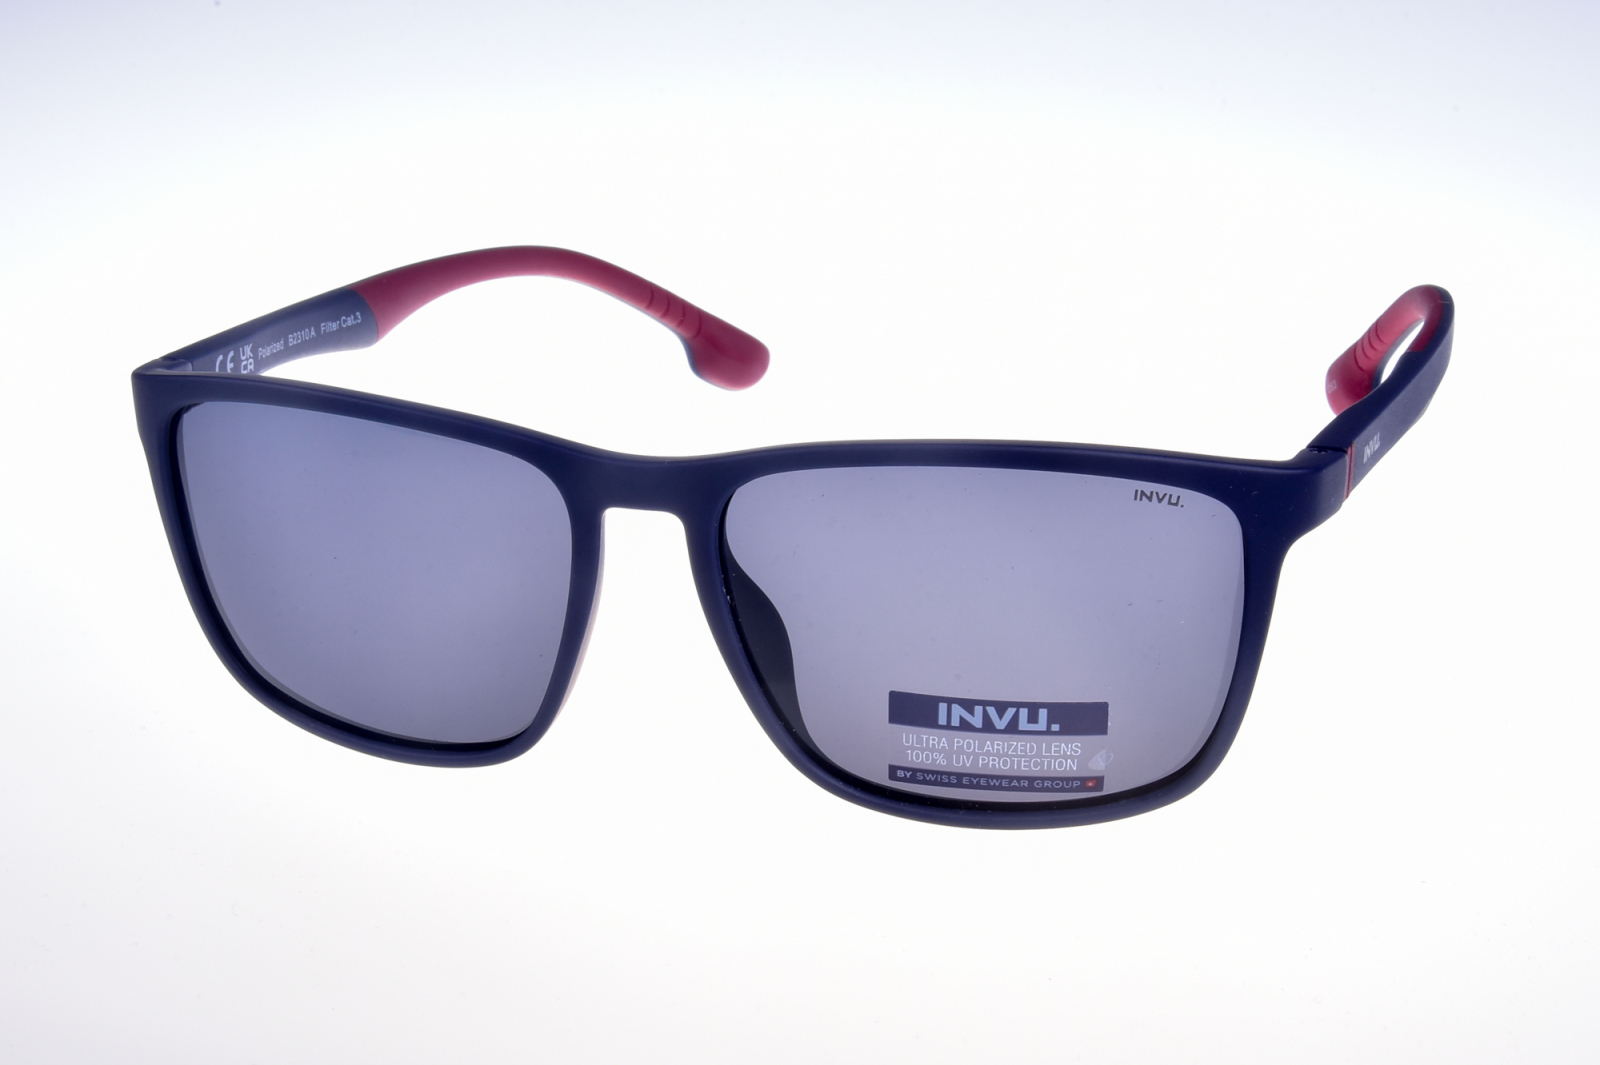 INVU. Basic B2310A - Pánske slnečné okuliare